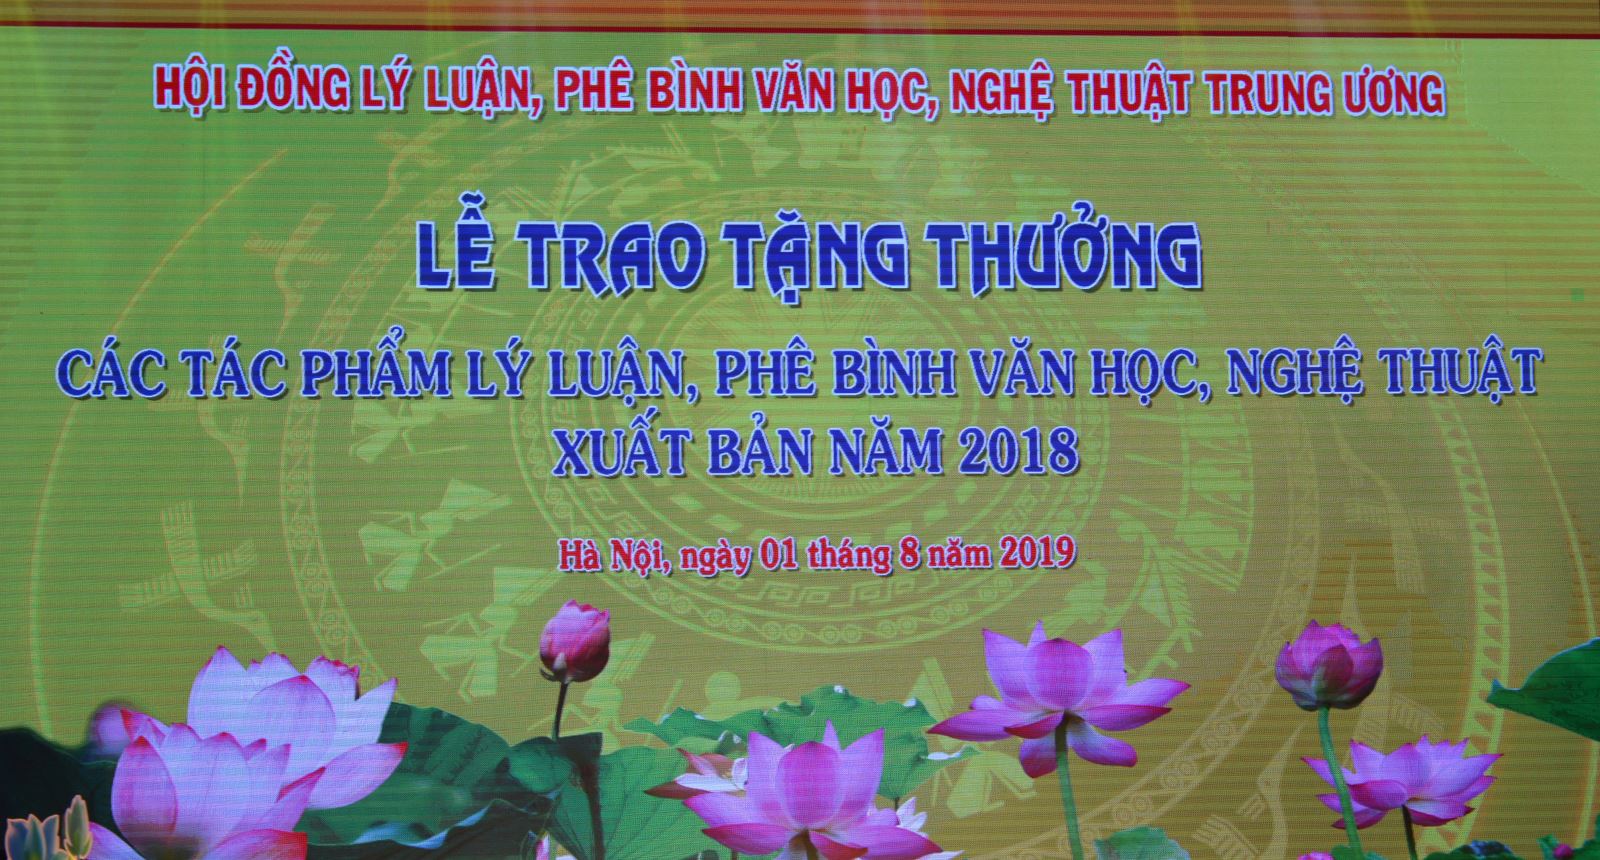 NXB Giáo dục Việt Nam đạt giải A giải thưởng của Hội đồng Lí luận, Phê bình Văn học Nghệ thuật Trung ương